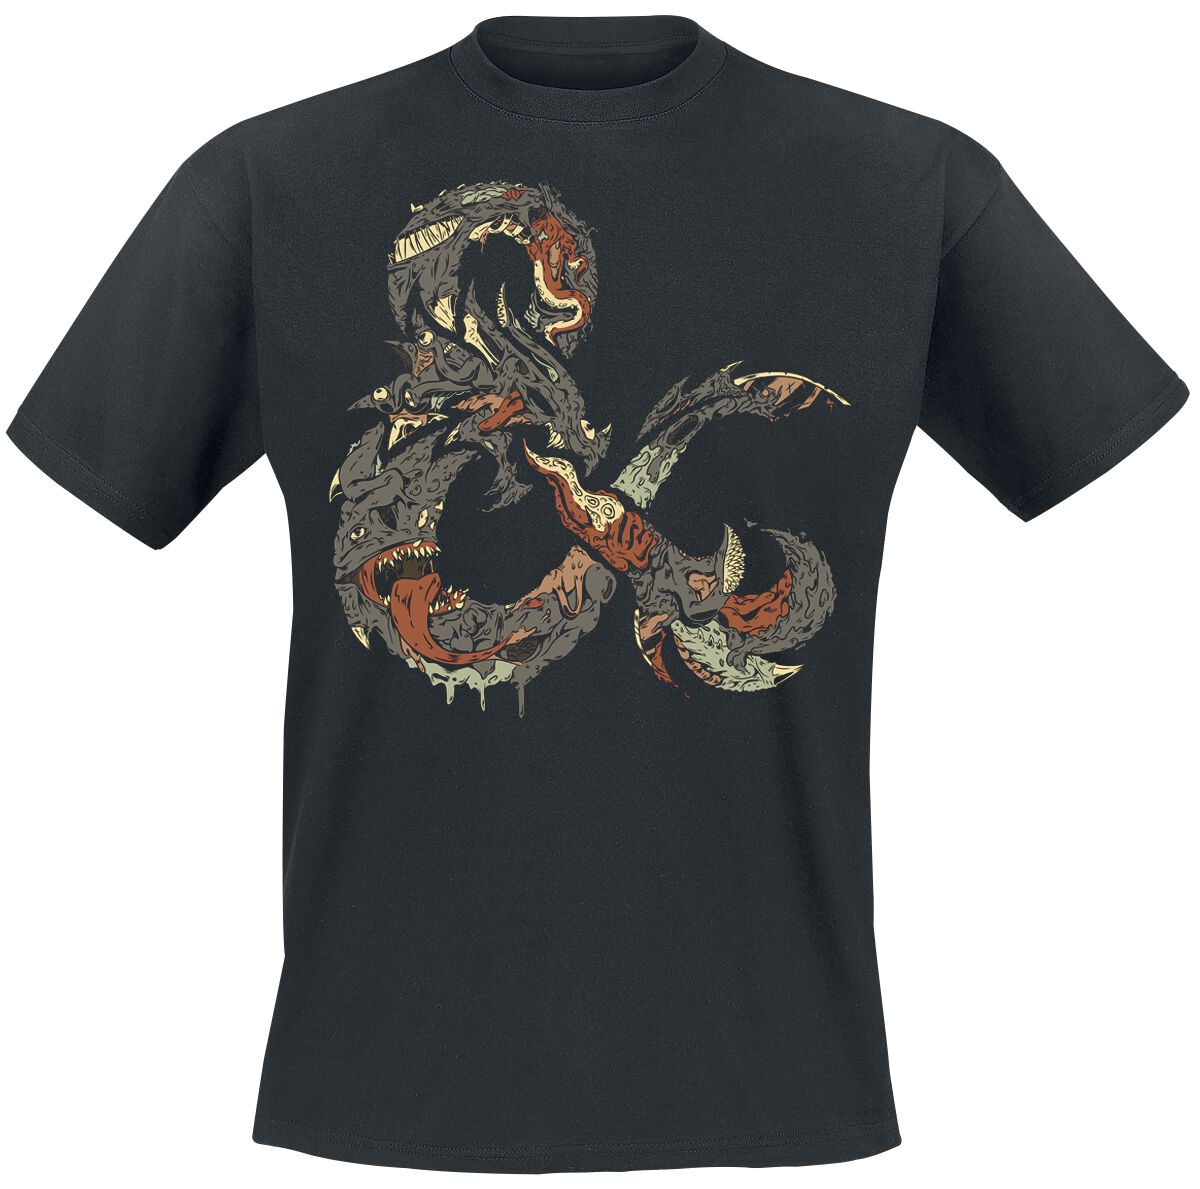 Dungeons and Dragons - Gaming T-Shirt - Ampersand Monster - S bis XXL - für Männer - Größe XXL - schwarz  - EMP exklusives Merchandise!